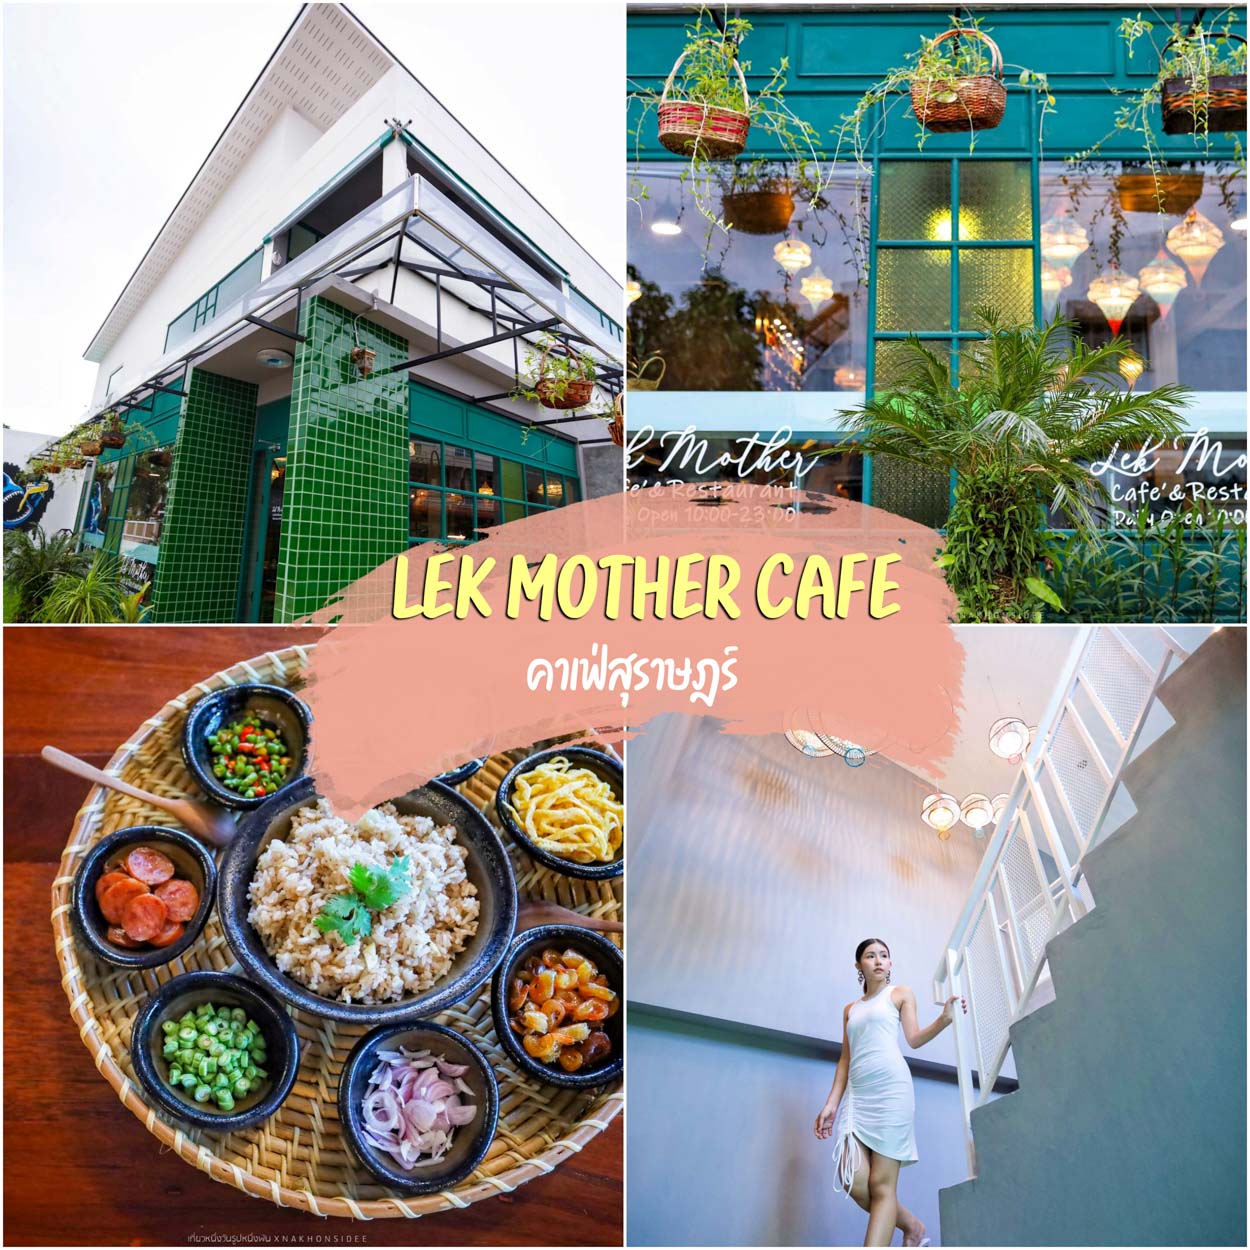 Lek Mother Cafe & Restaurant คาเฟ่สุราษฎร์เล็กๆ บรรยากาศเหมือนนั่งอยู่บ้าน